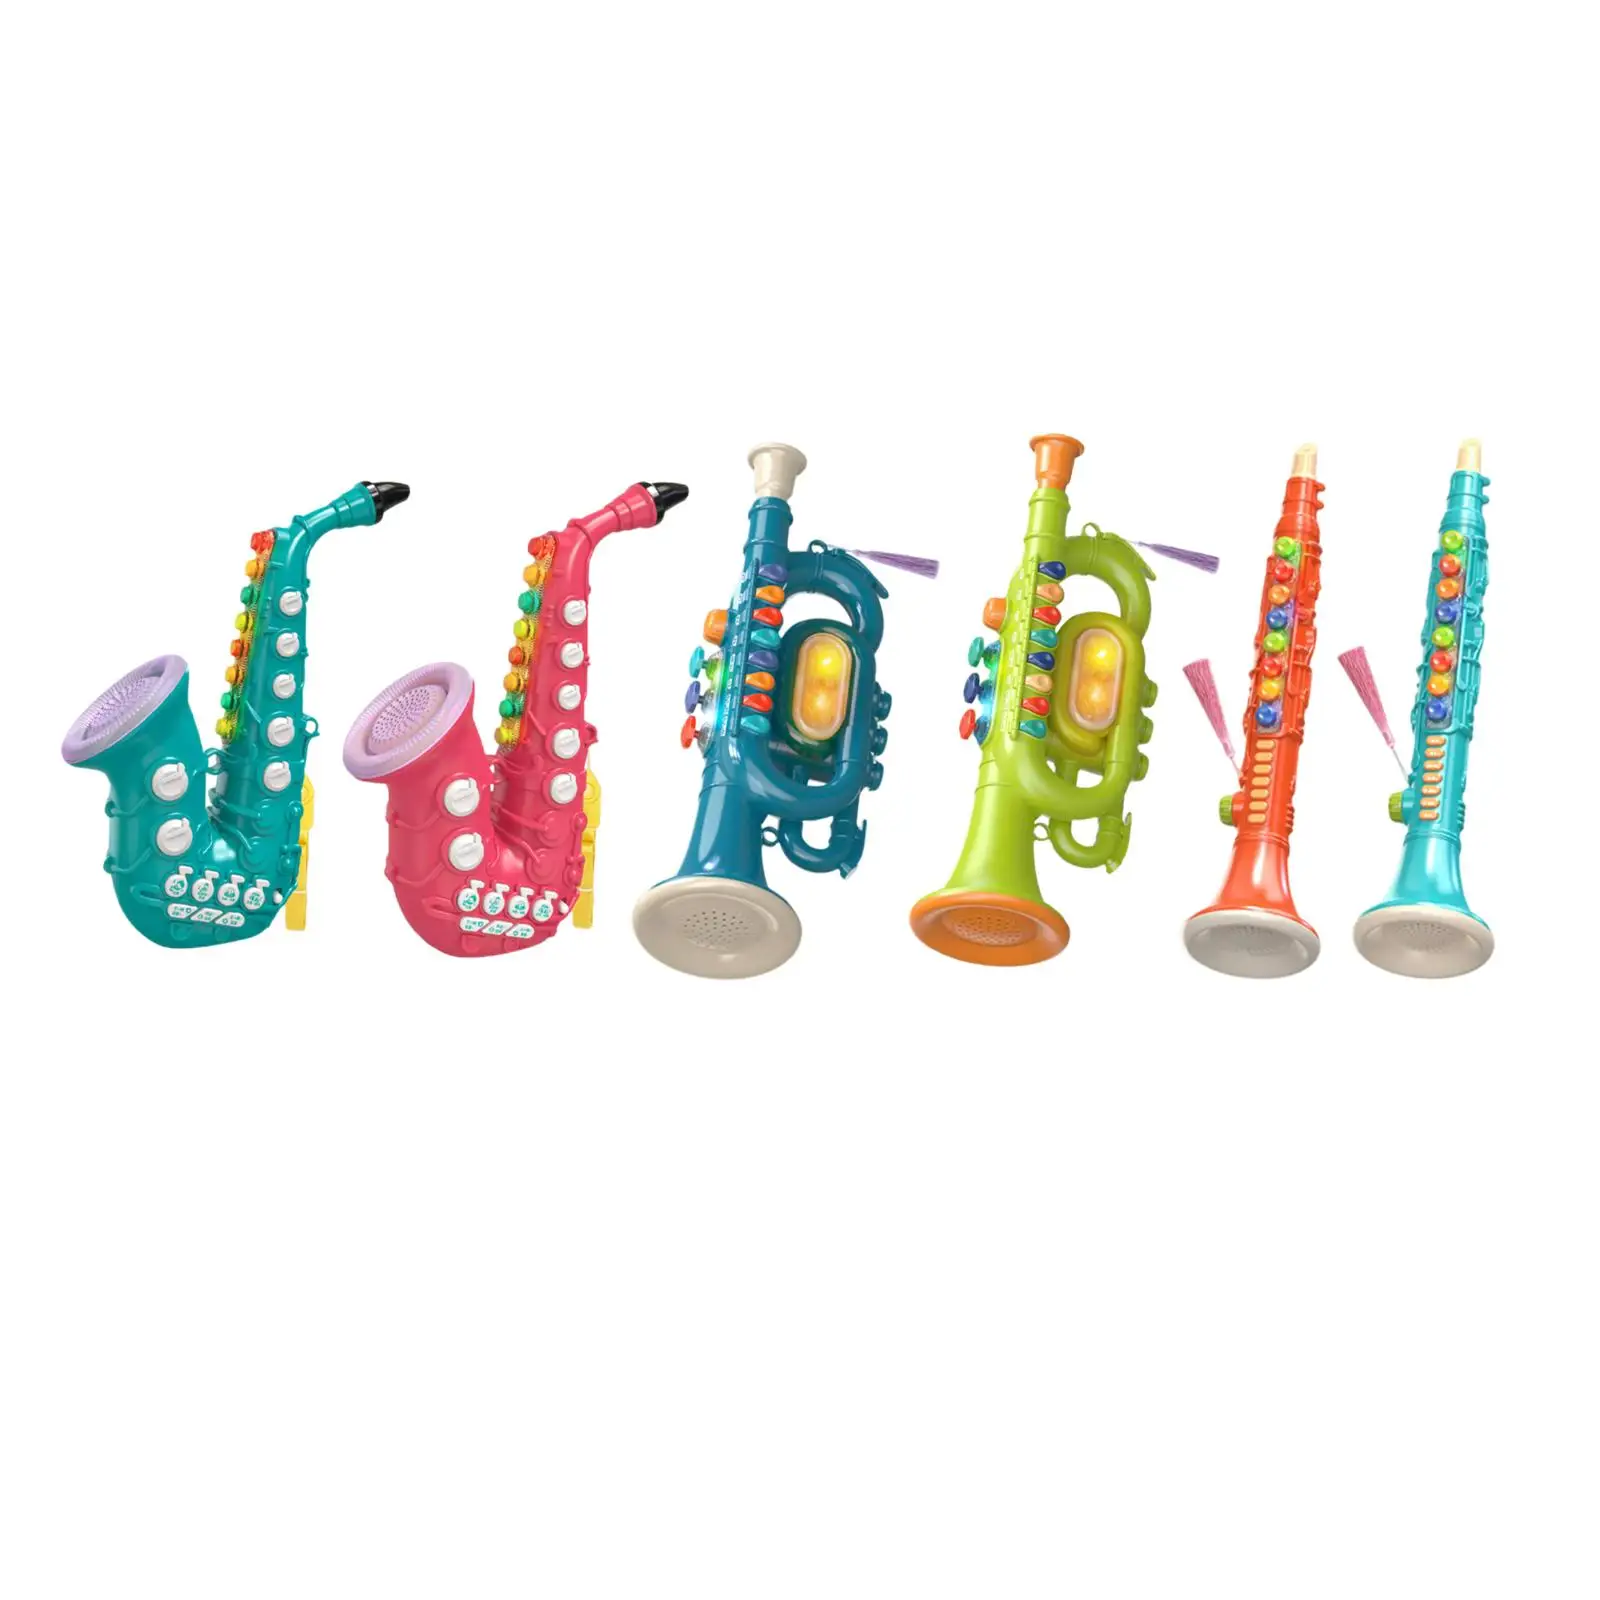 

8 нот саксофон игрушка Музыкальные инструменты обучающая имитация портативный кларнет обучающая игрушка подарок для раннего развития детей